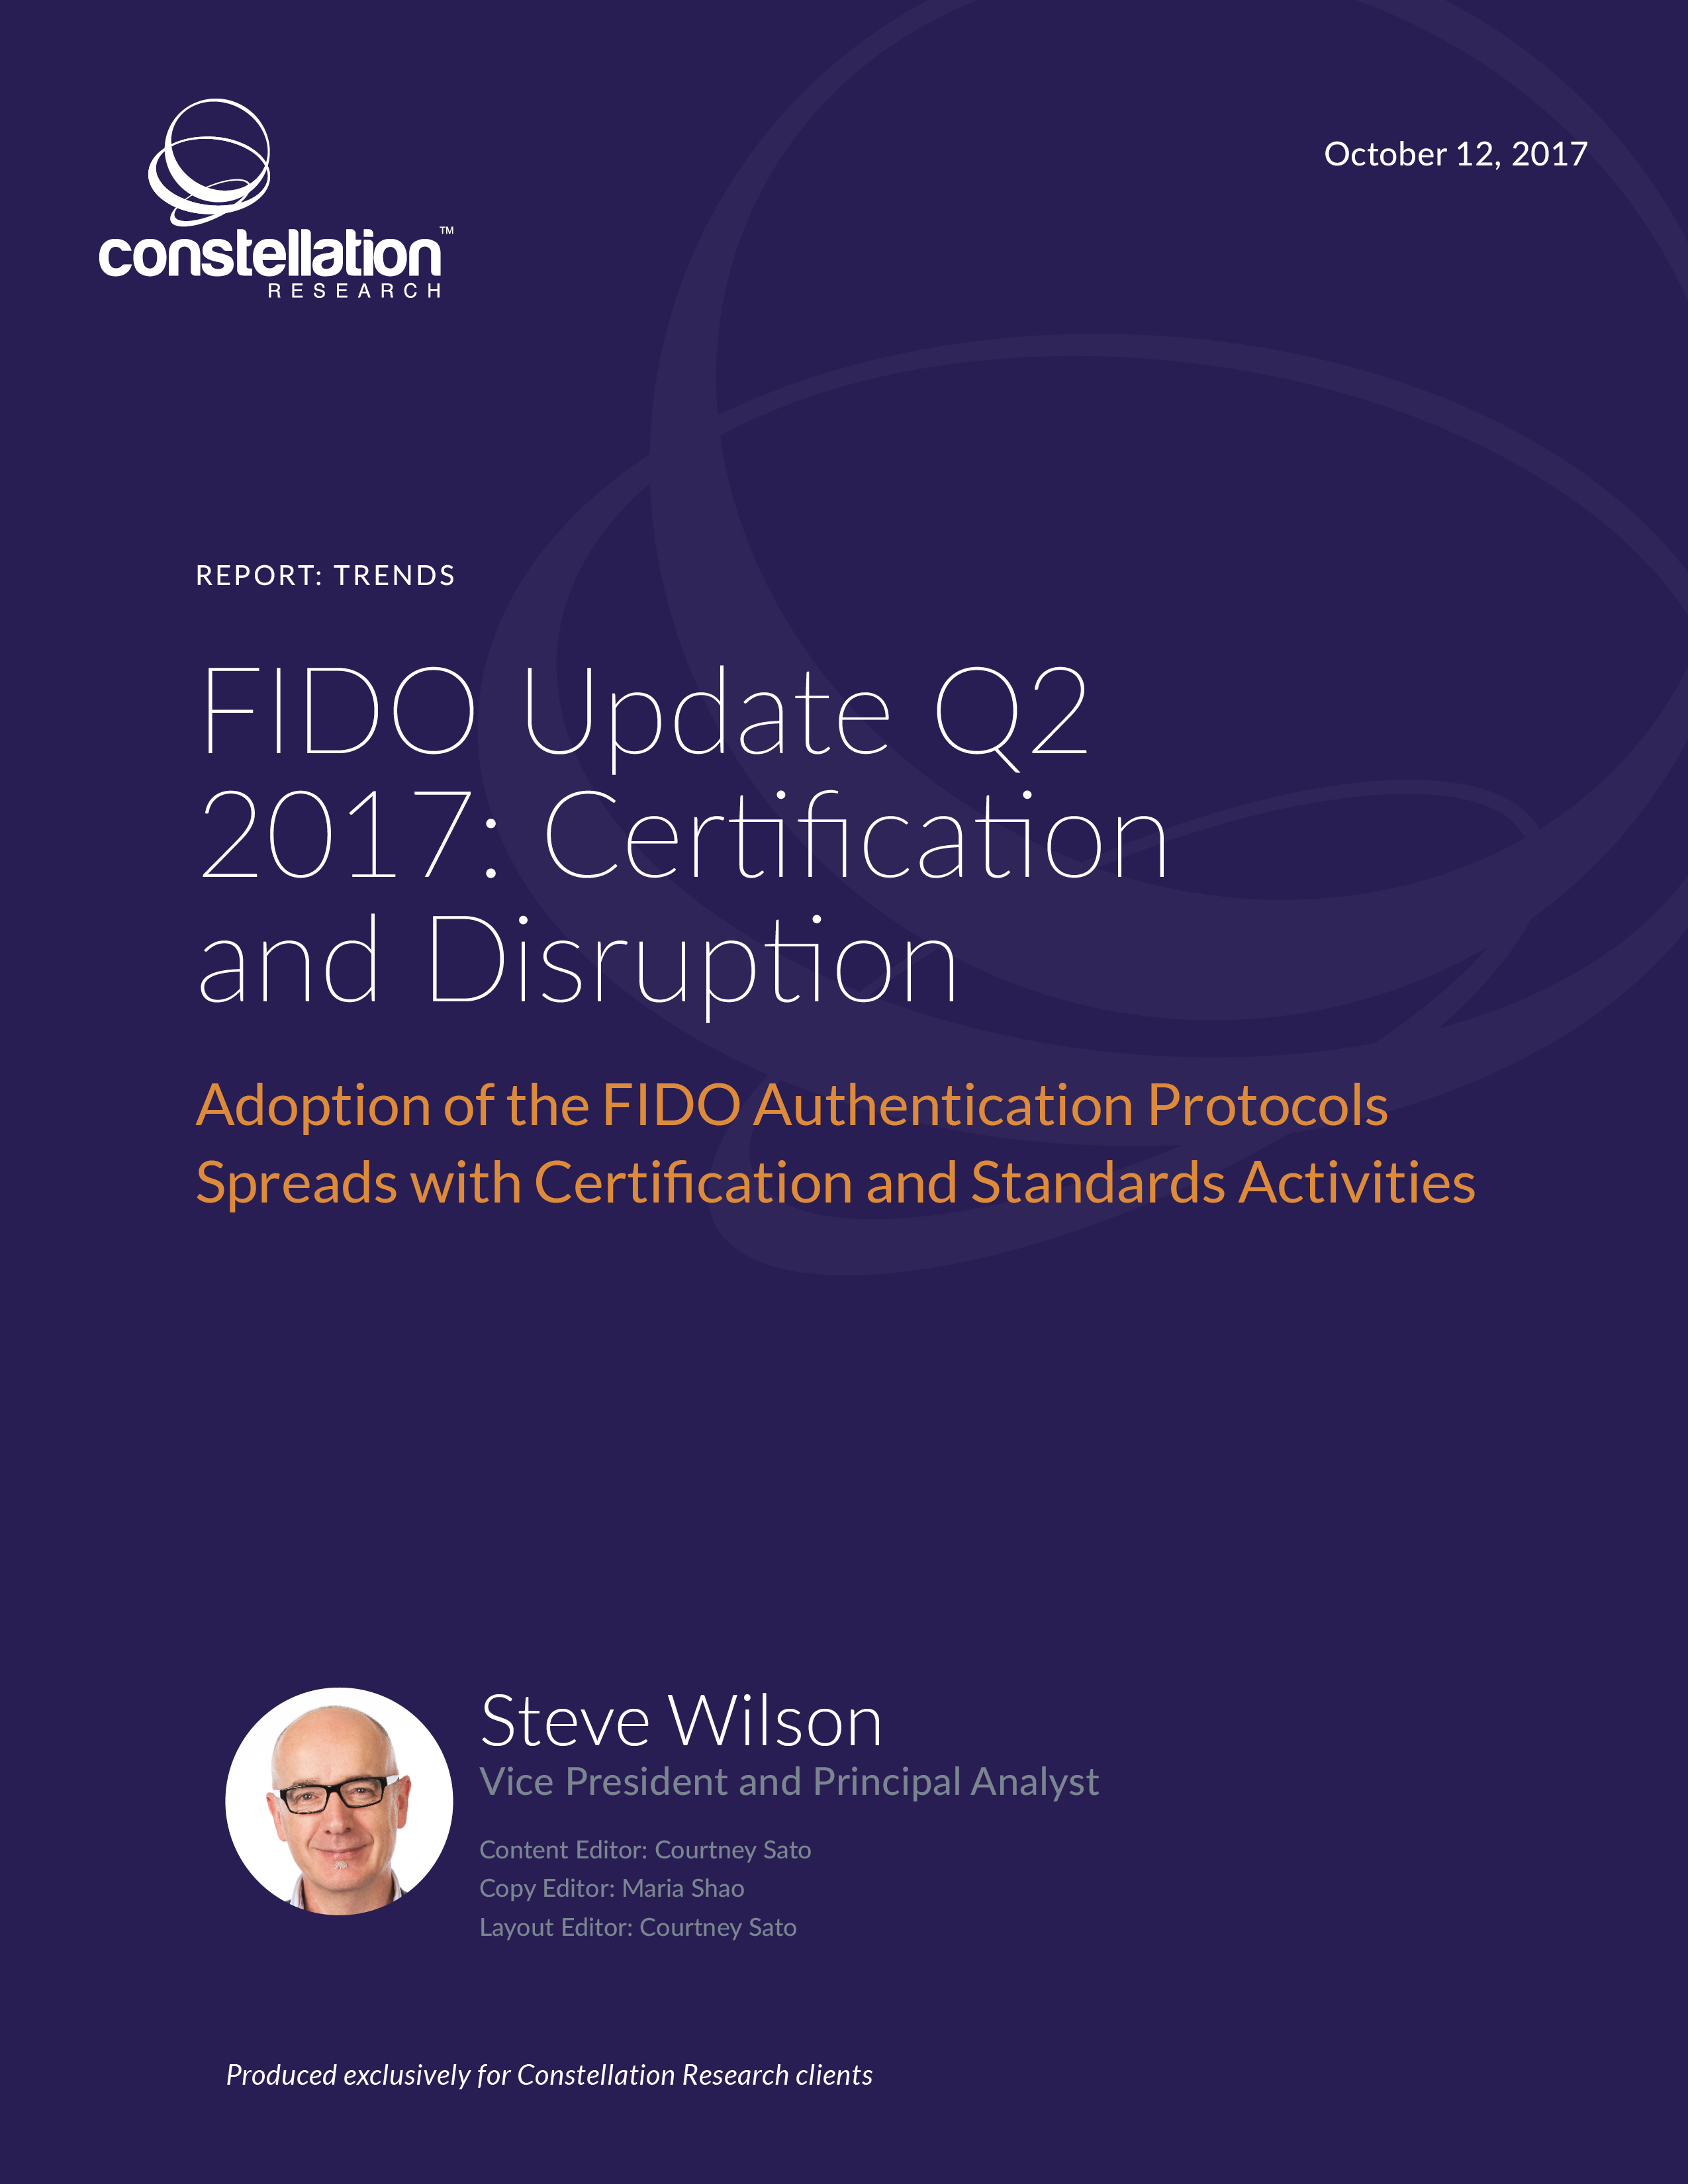 FIDO Alliance Update Q2 2017